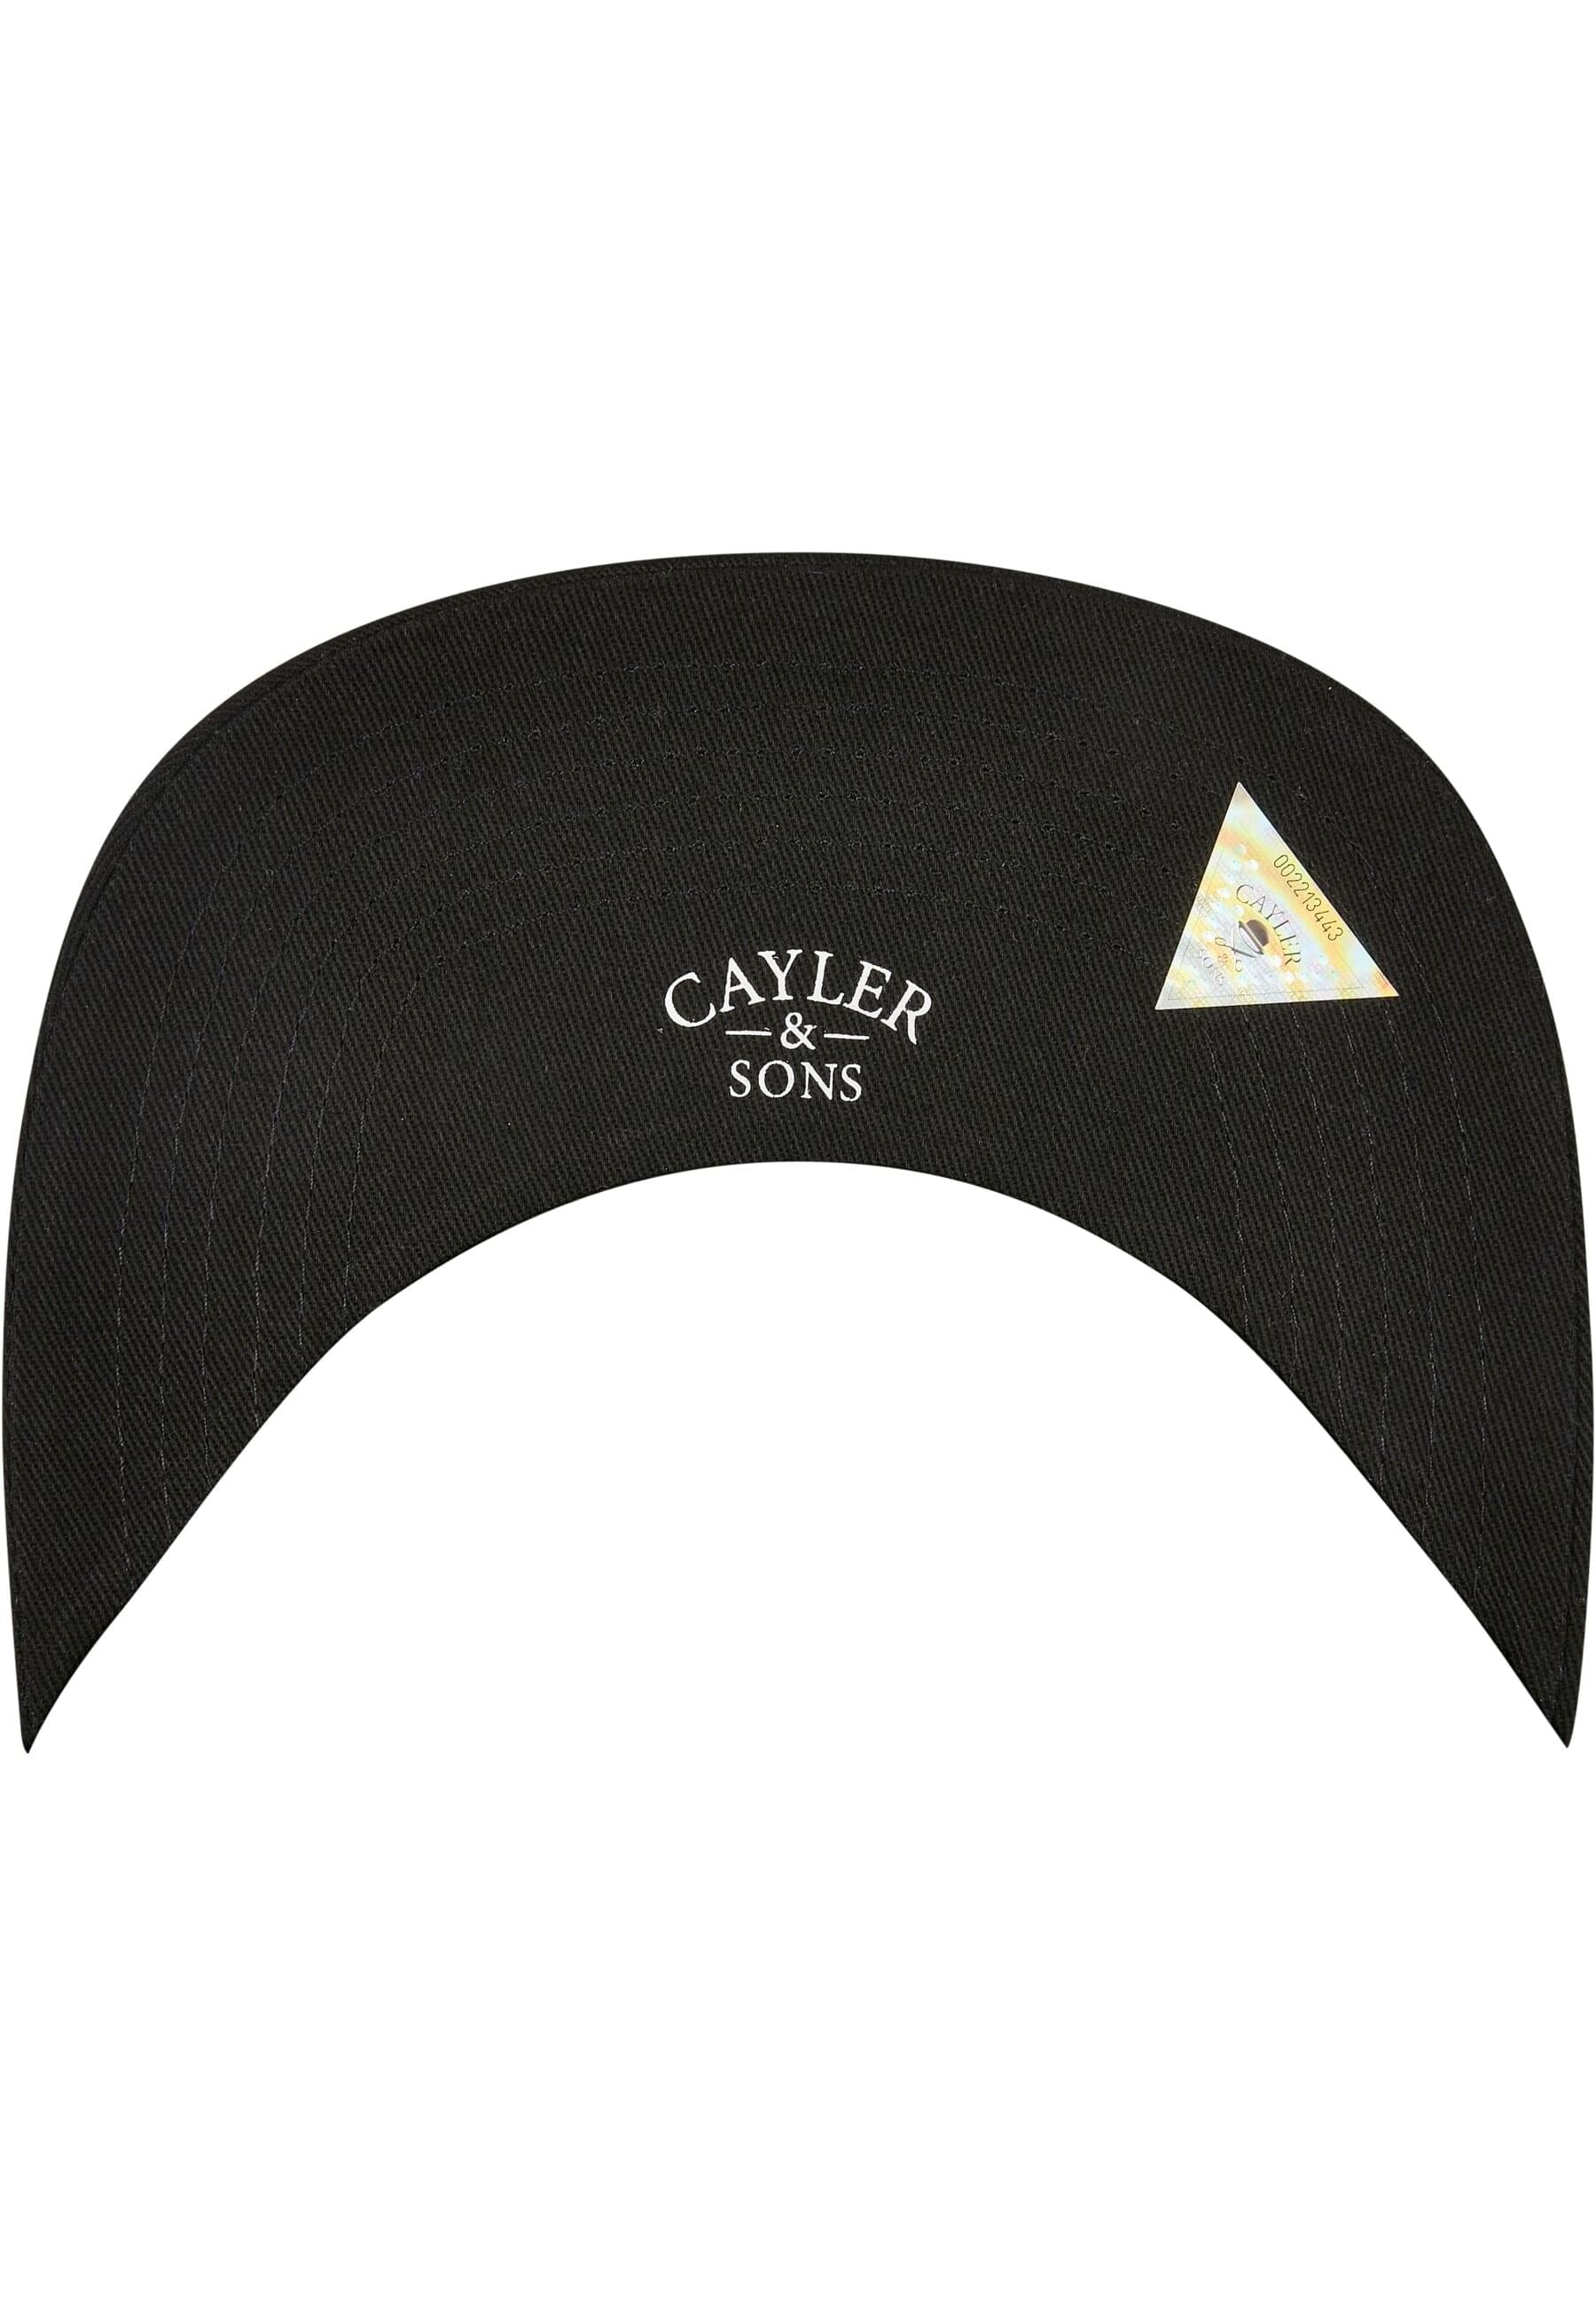 CAYLER & SONS Flex Cap »Cayler & Sons Herren Slam Dunk Cap«